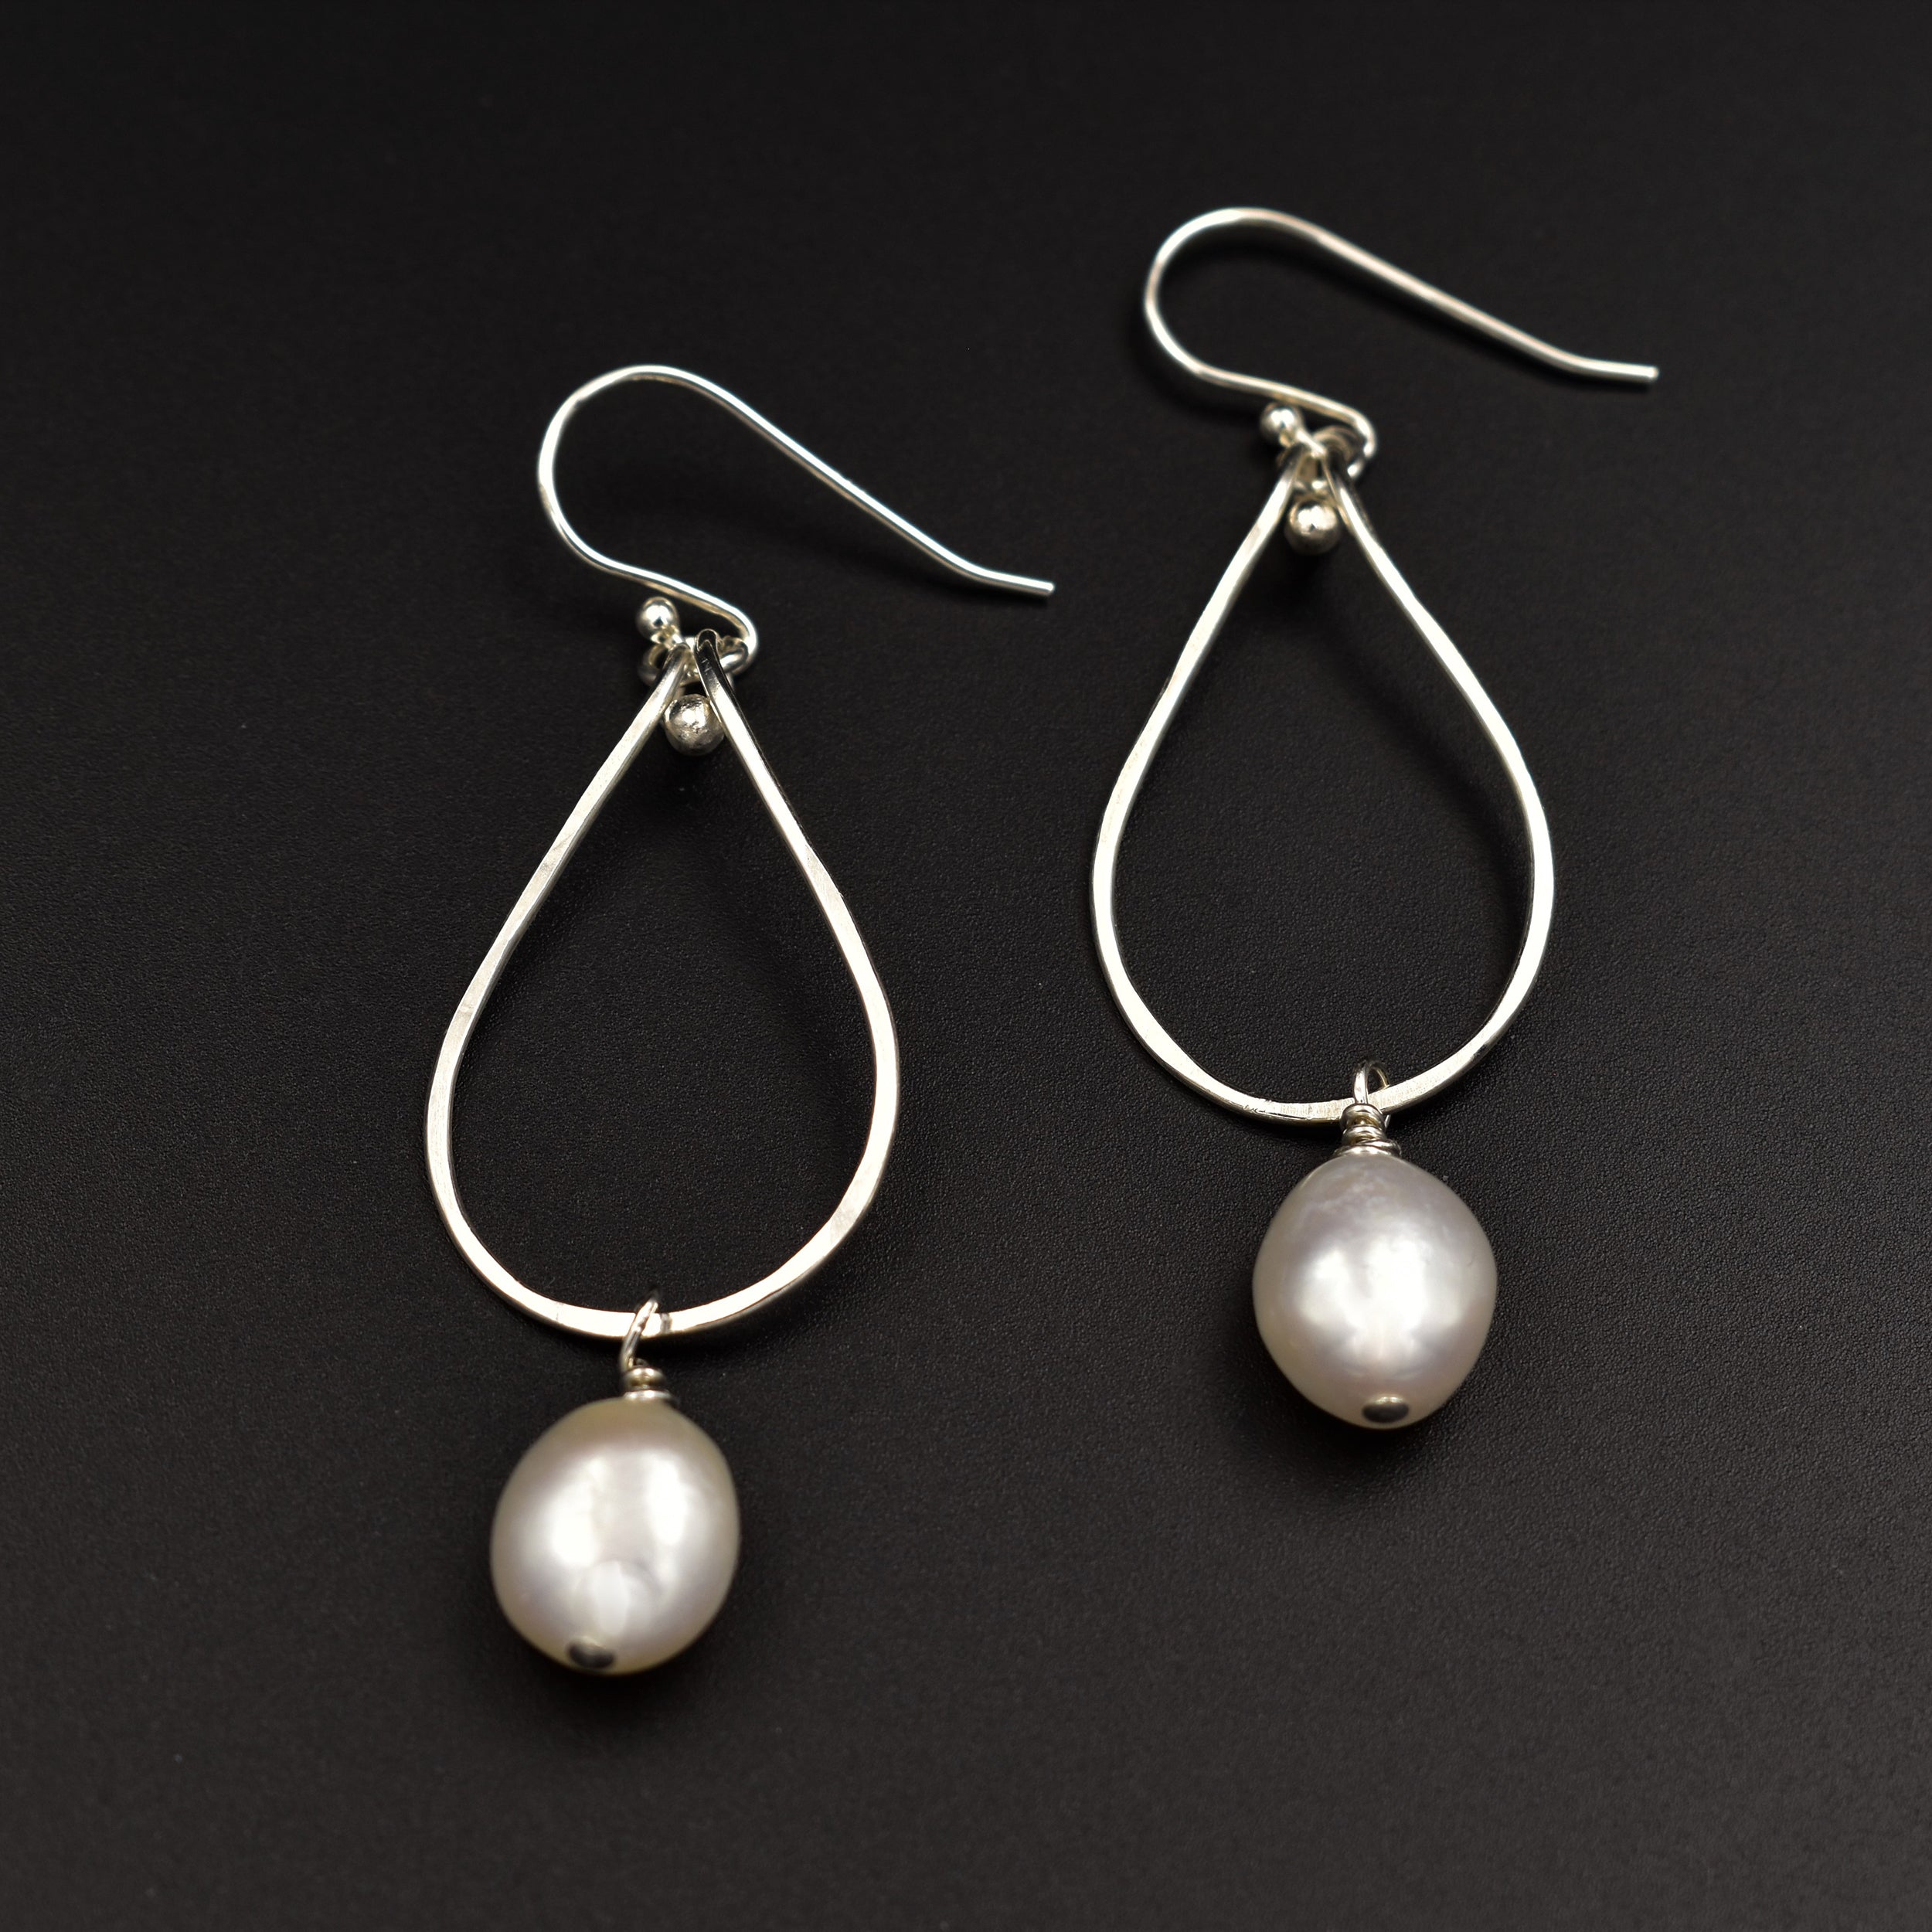 Moonlight Cascade Earrings - White Pearls